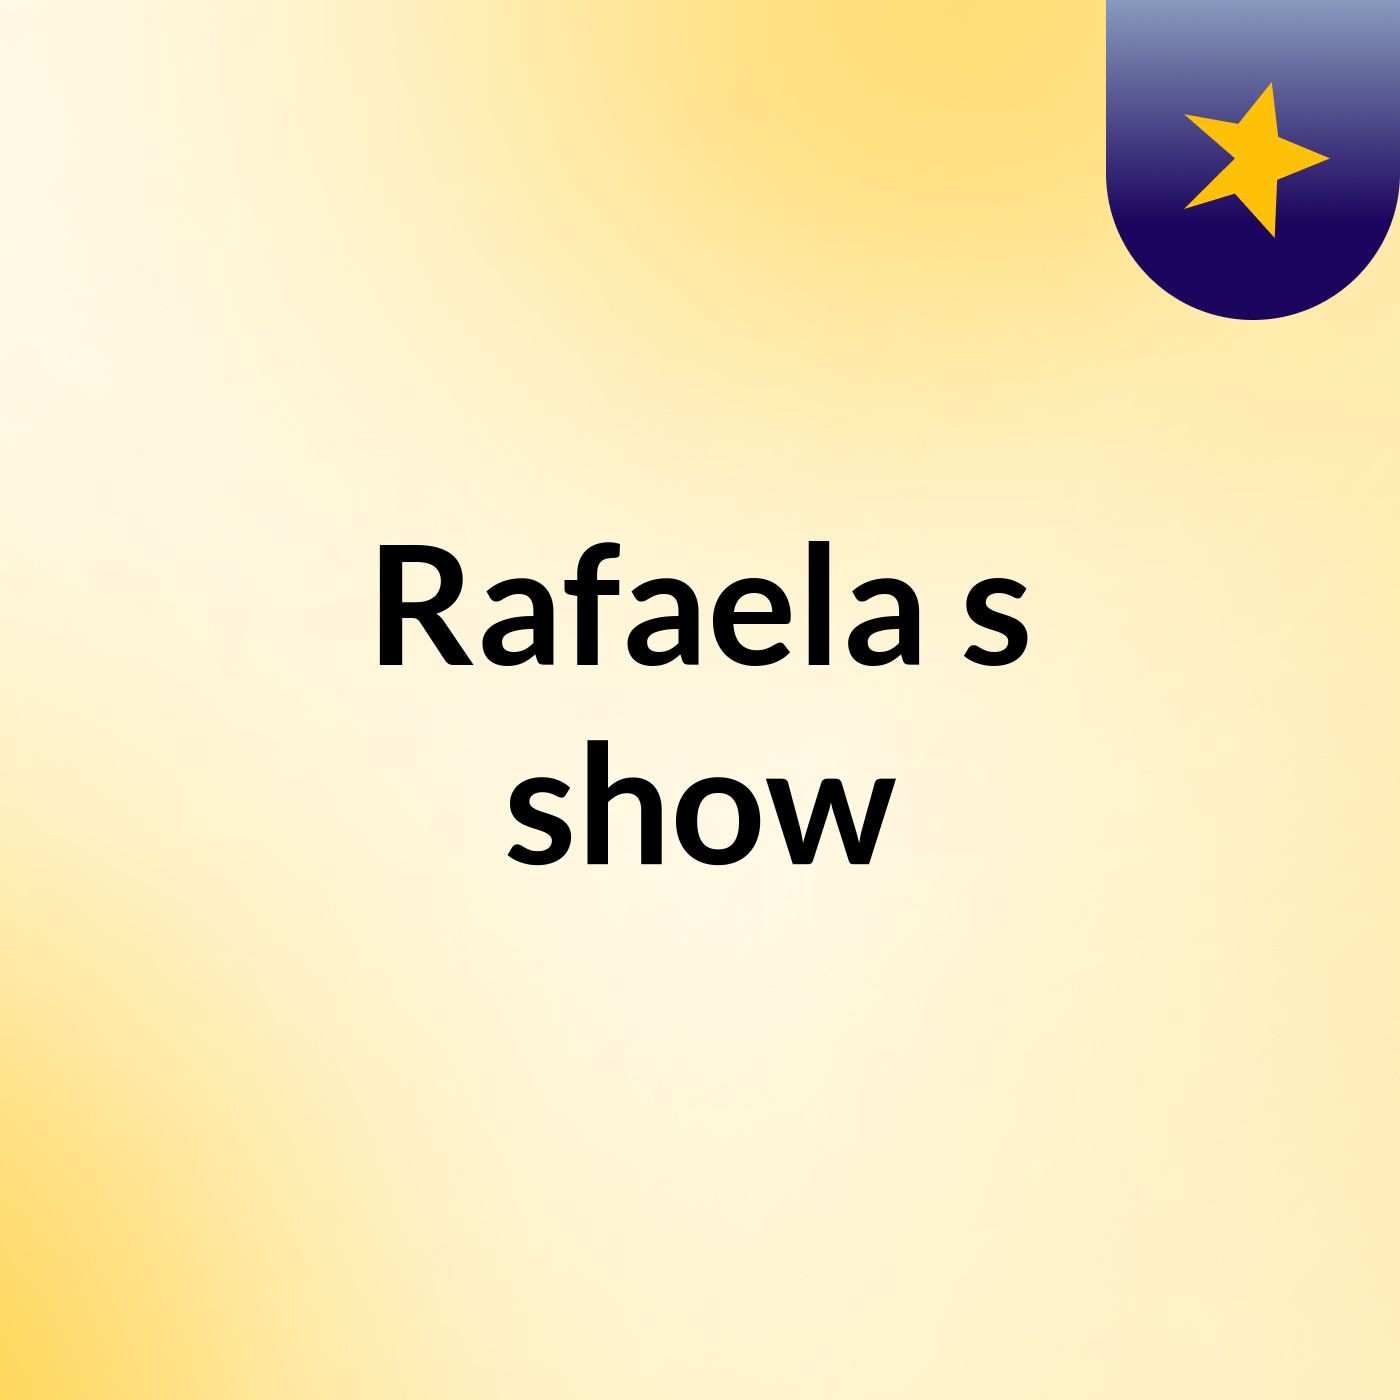 Rafaela's show